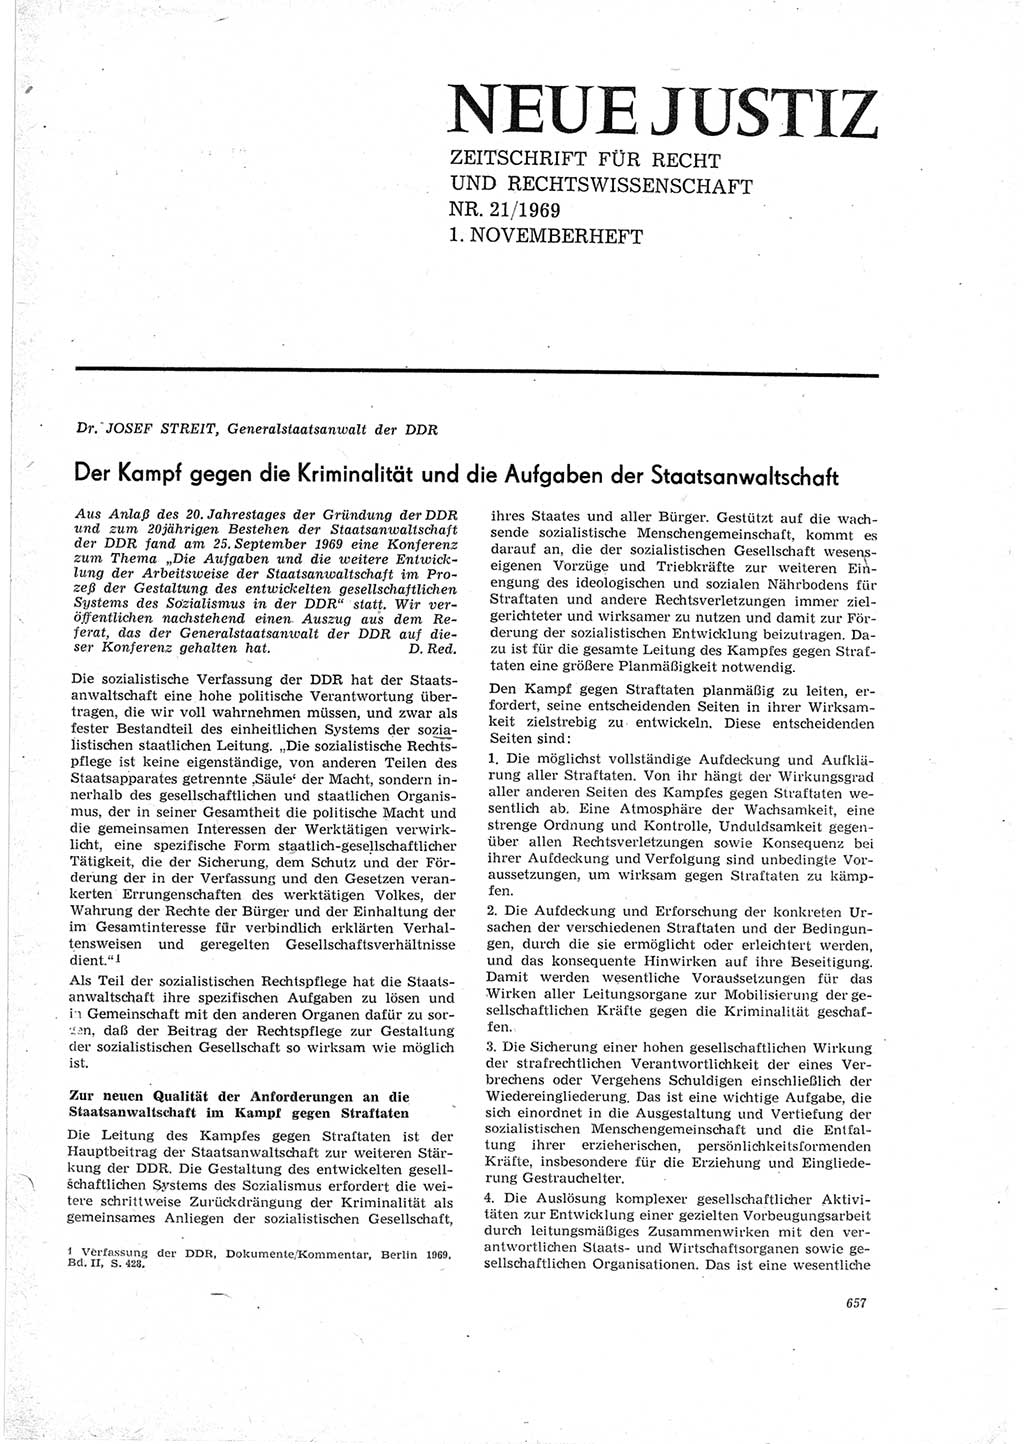 Neue Justiz (NJ), Zeitschrift für Recht und Rechtswissenschaft [Deutsche Demokratische Republik (DDR)], 23. Jahrgang 1969, Seite 657 (NJ DDR 1969, S. 657)